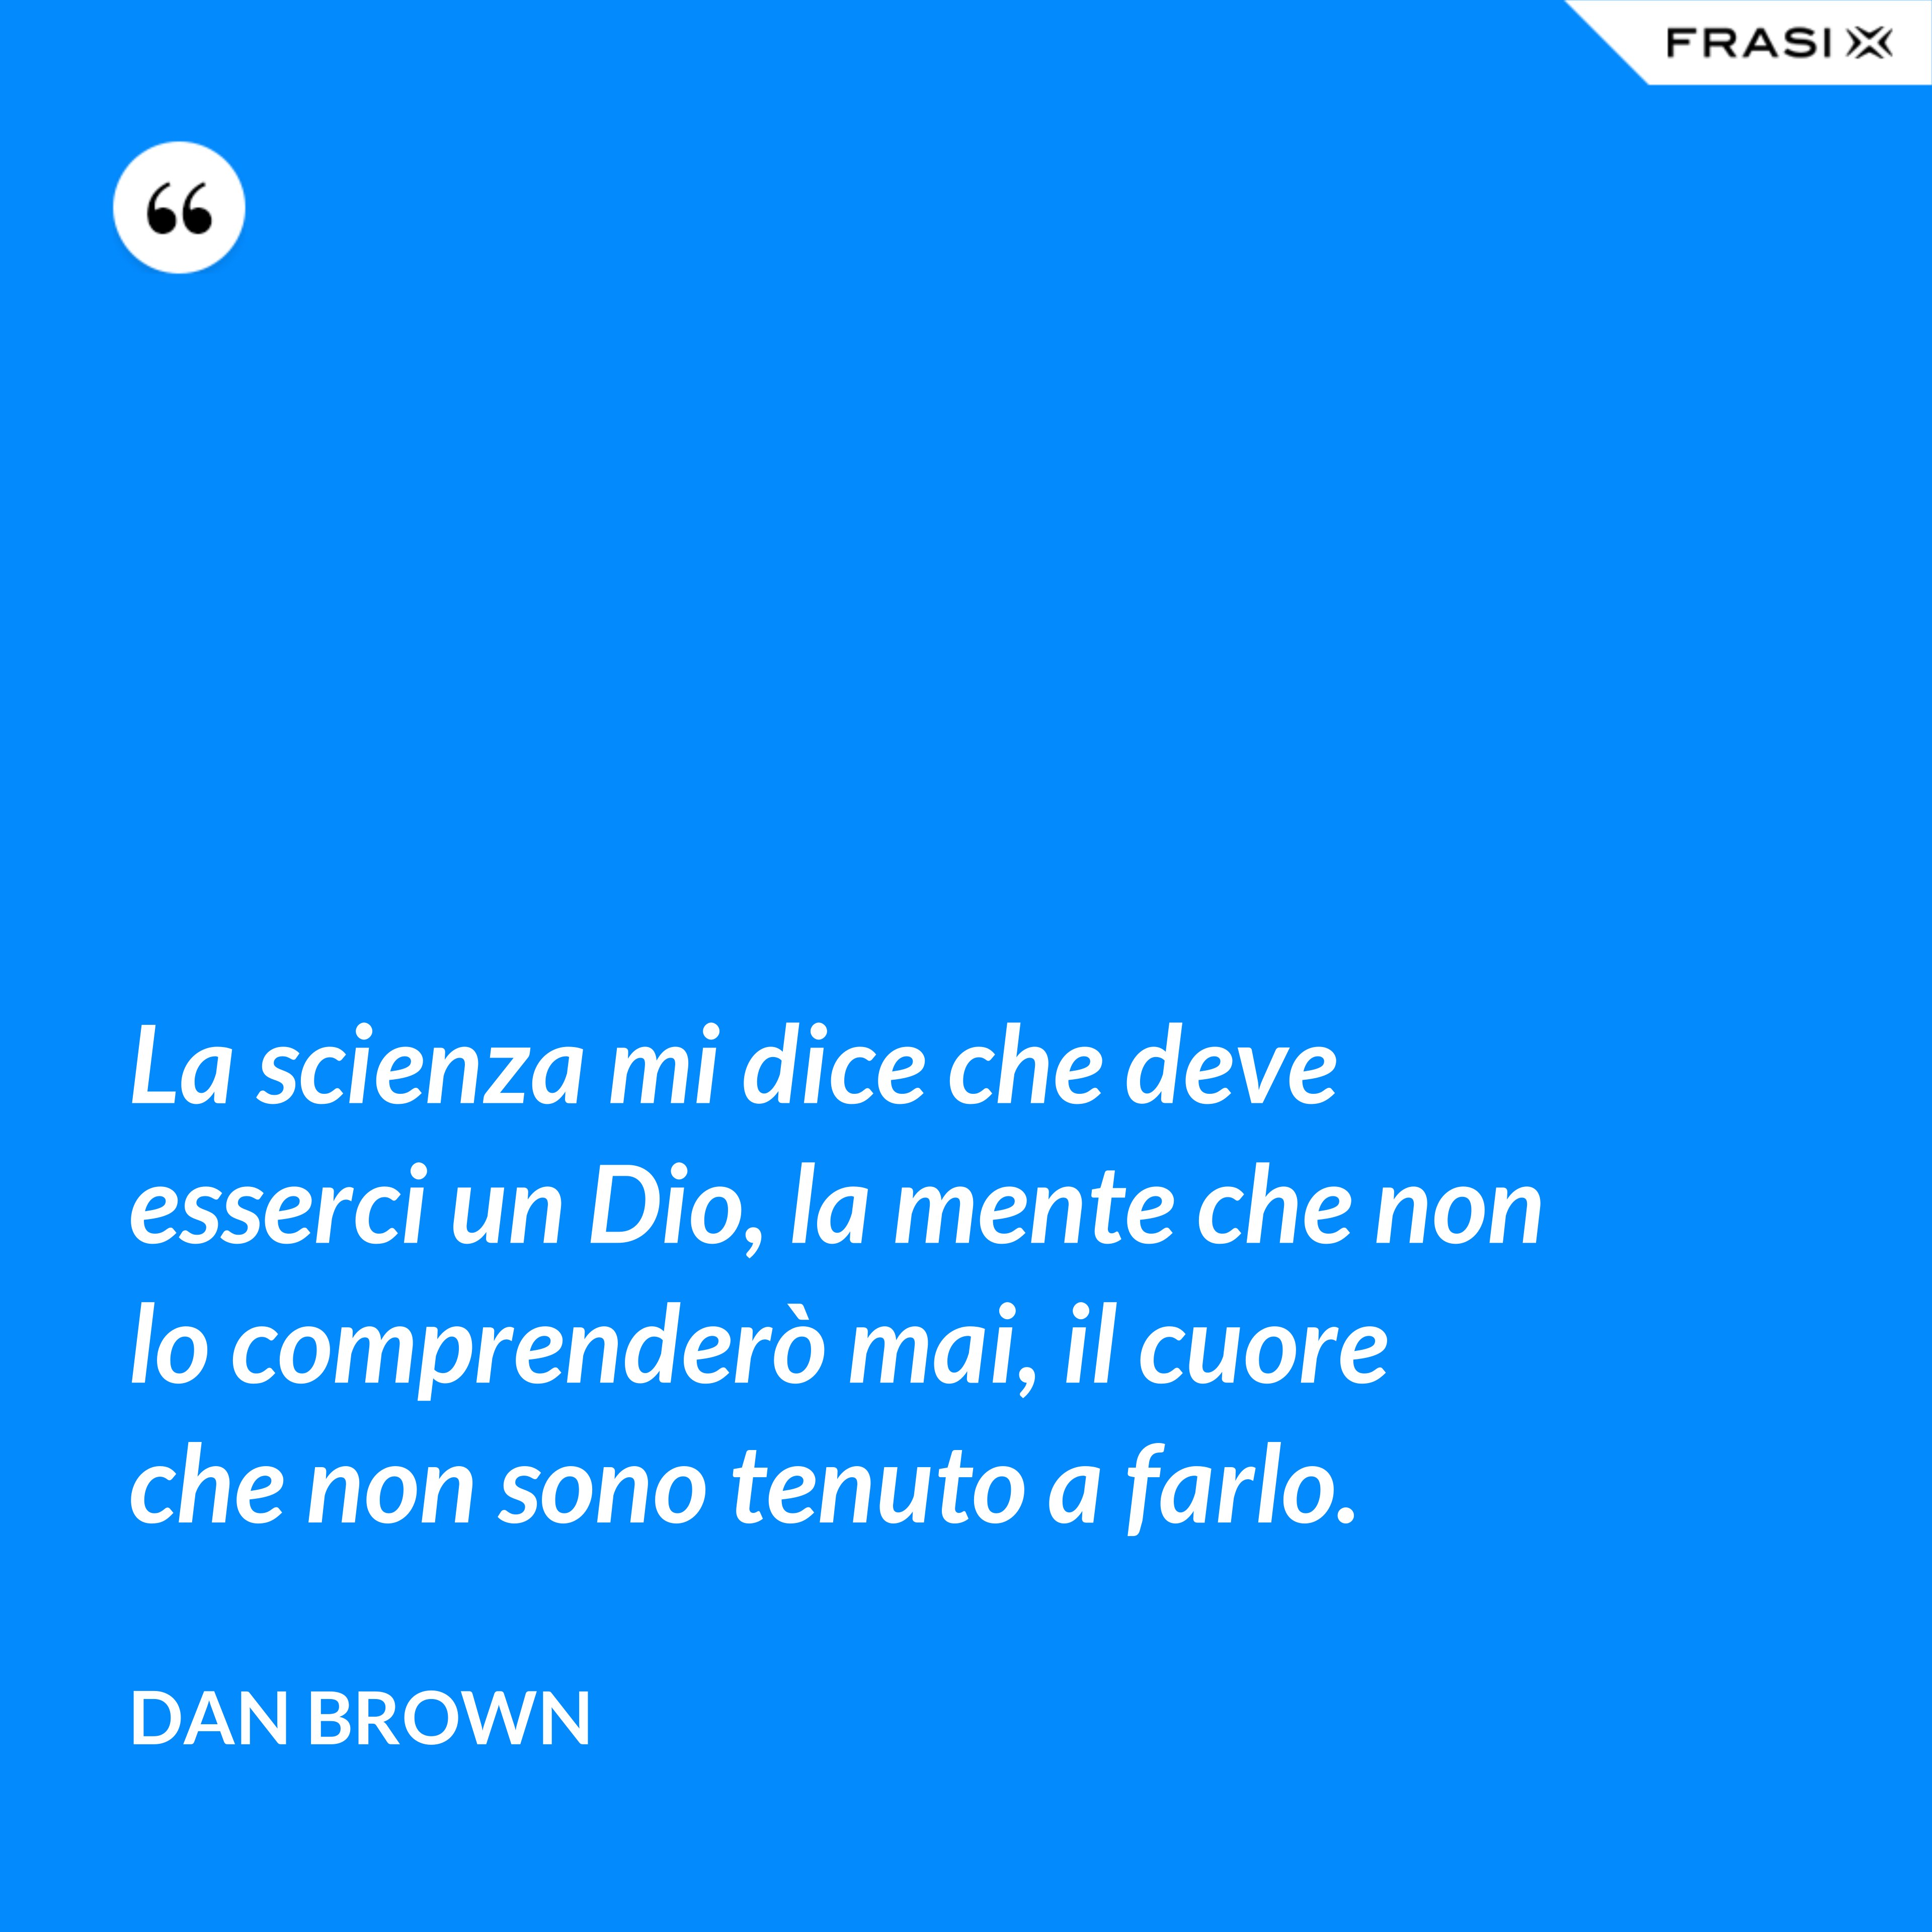 La scienza mi dice che deve esserci un Dio, la mente che non lo comprenderò mai, il cuore che non sono tenuto a farlo. - Dan Brown